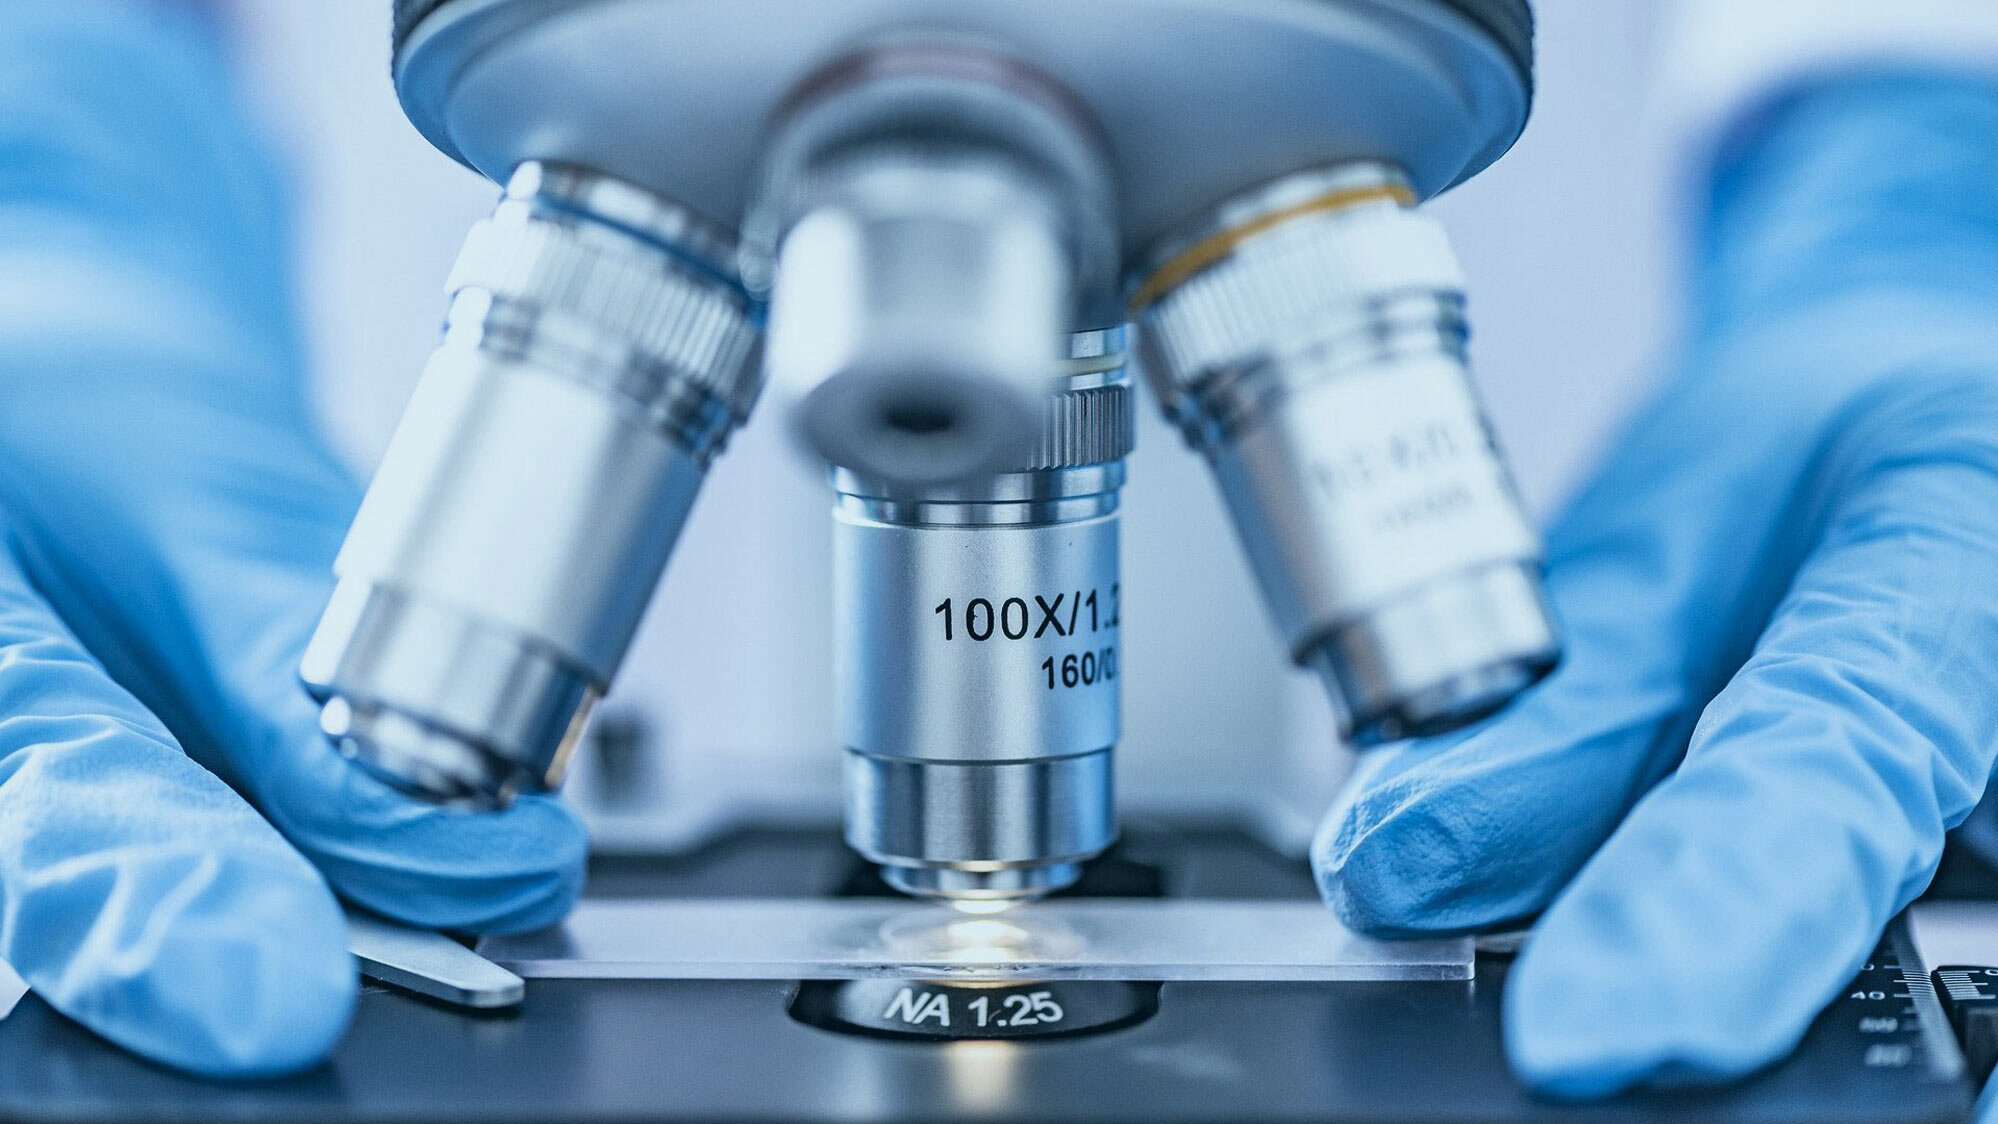 https://pixabay.com/de/photos/analyse-becher-biochemie-biologie-4402809/ Festangestellte Karriere; Eine Person legt einen Objektträger unter ein Mikroskop